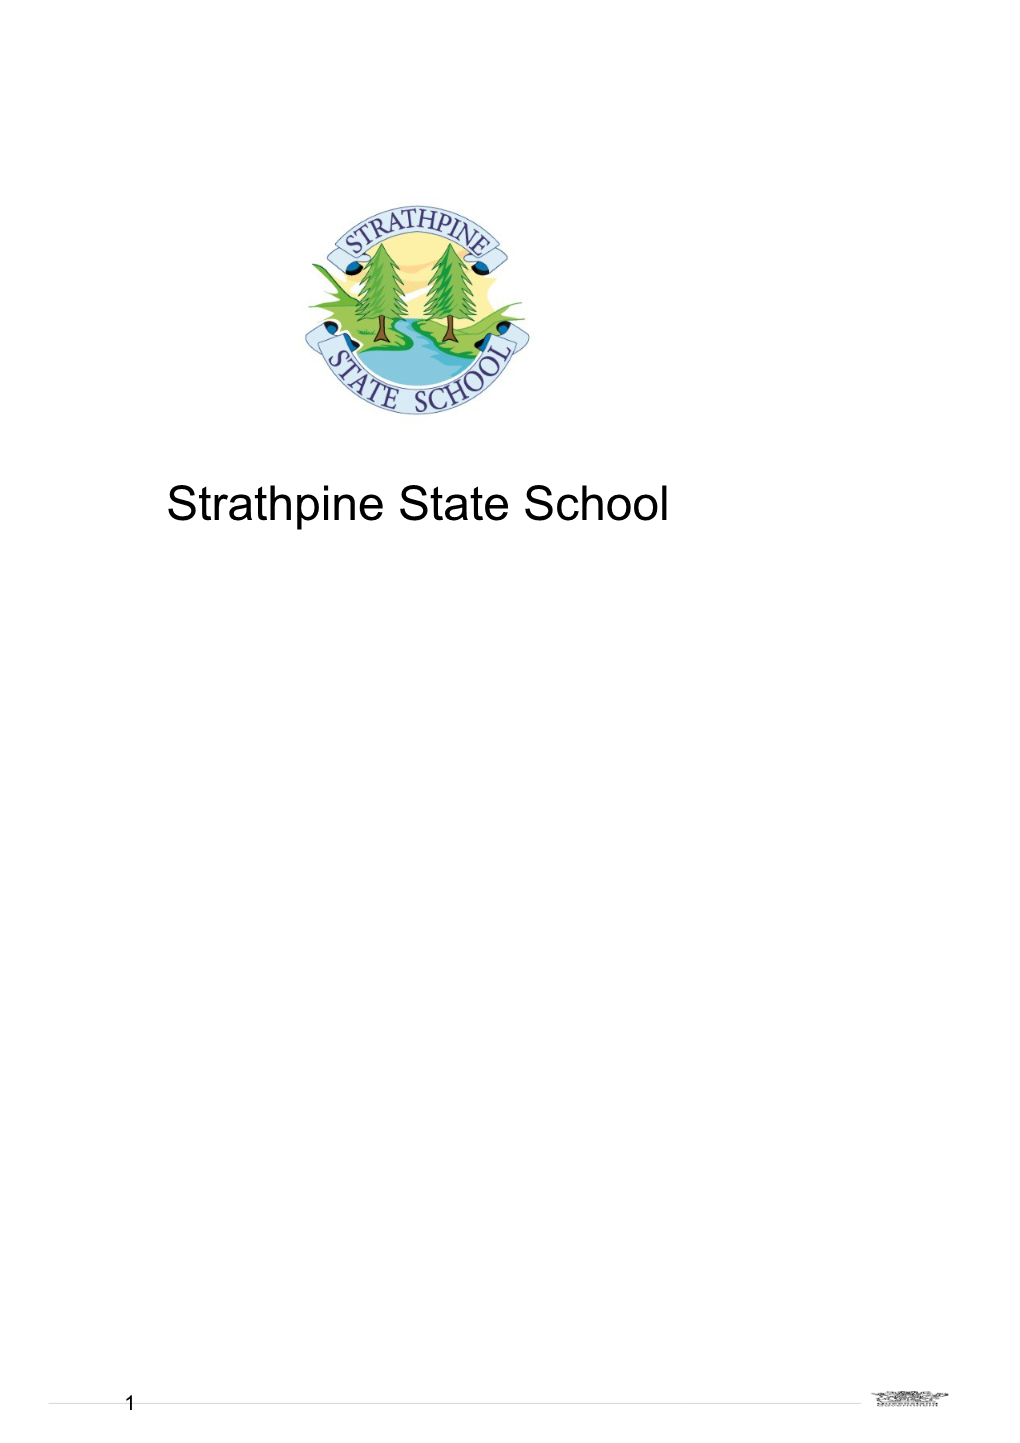 Strathpine State School Annual Report 2016